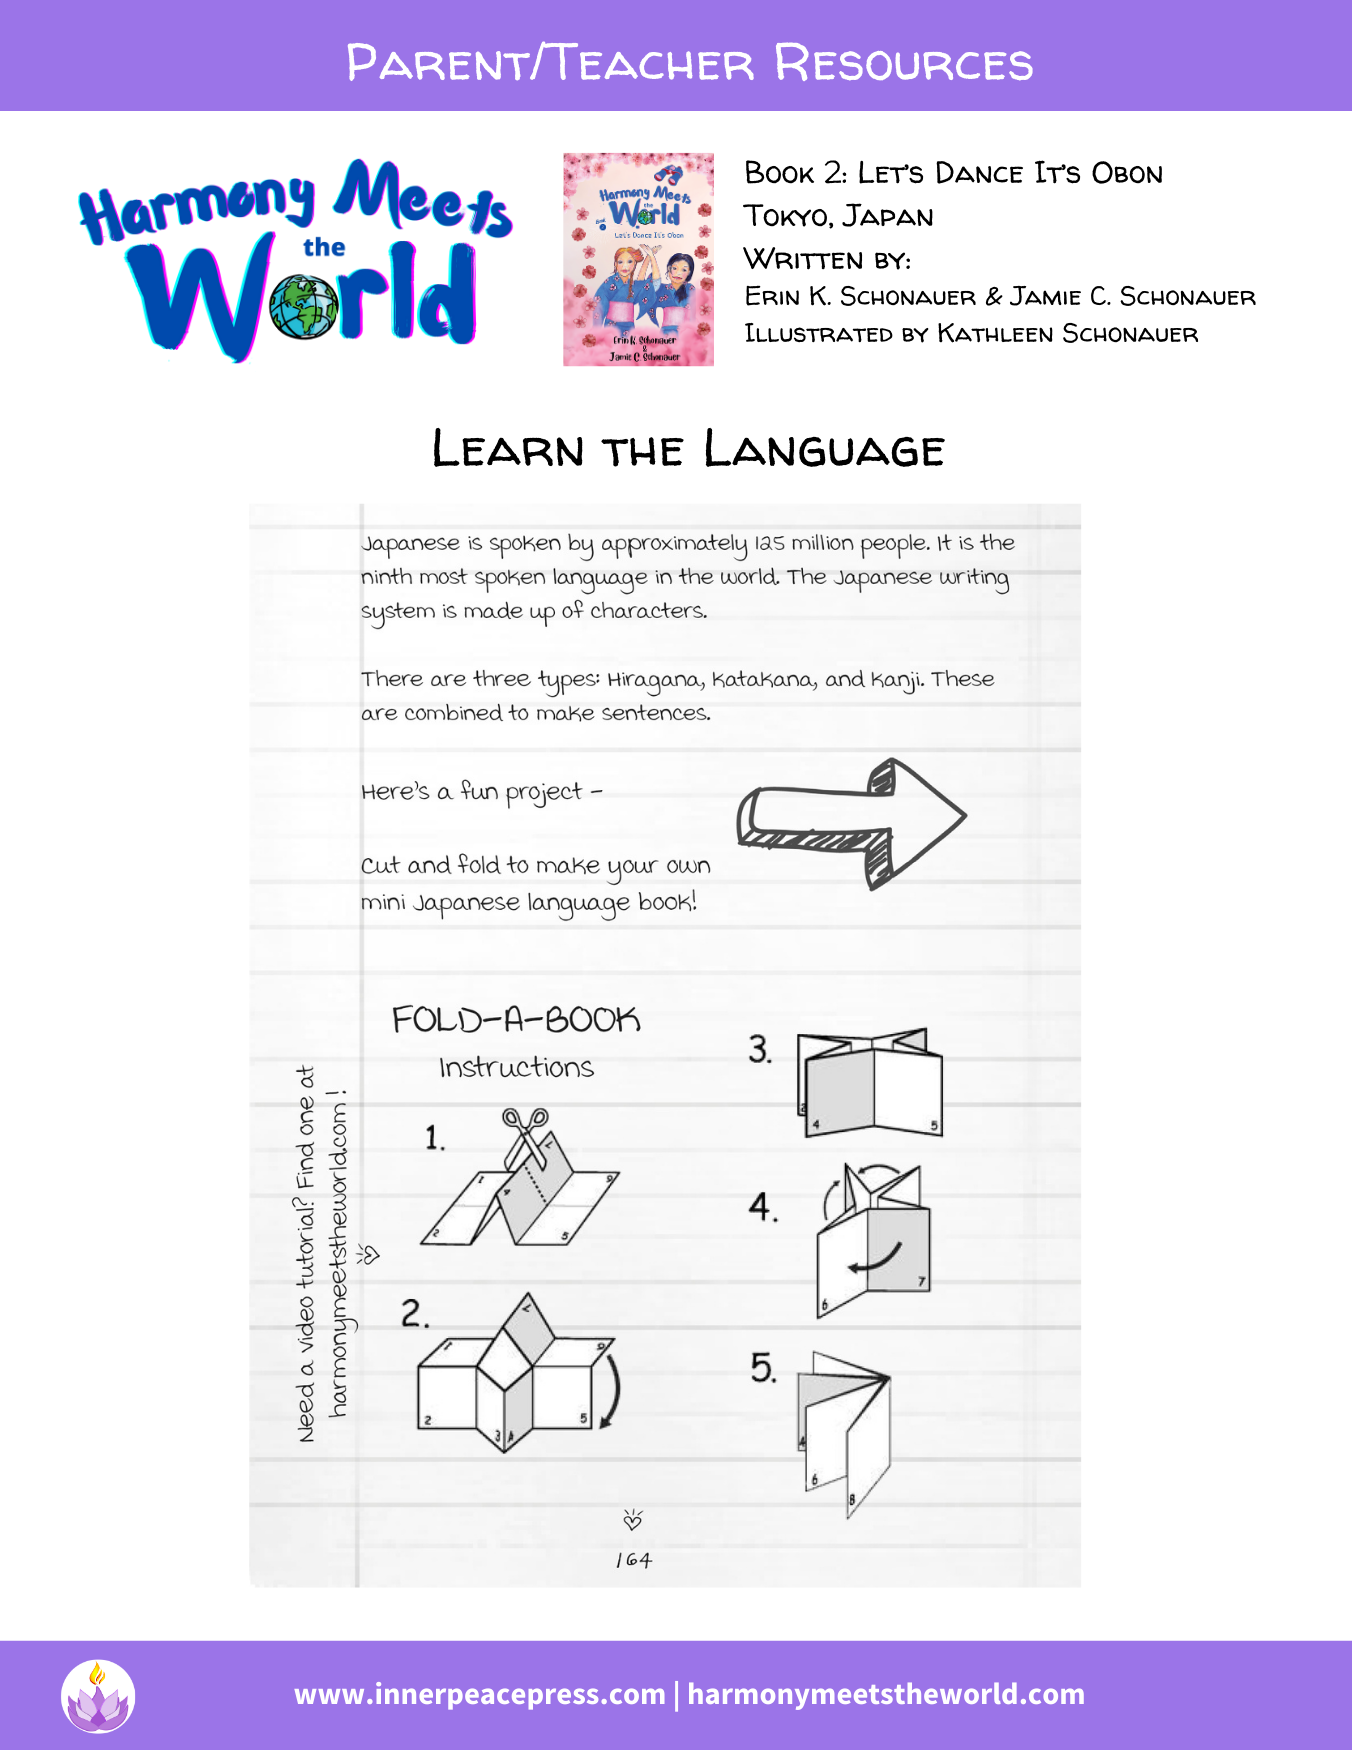 Learn the Language Mini-Book